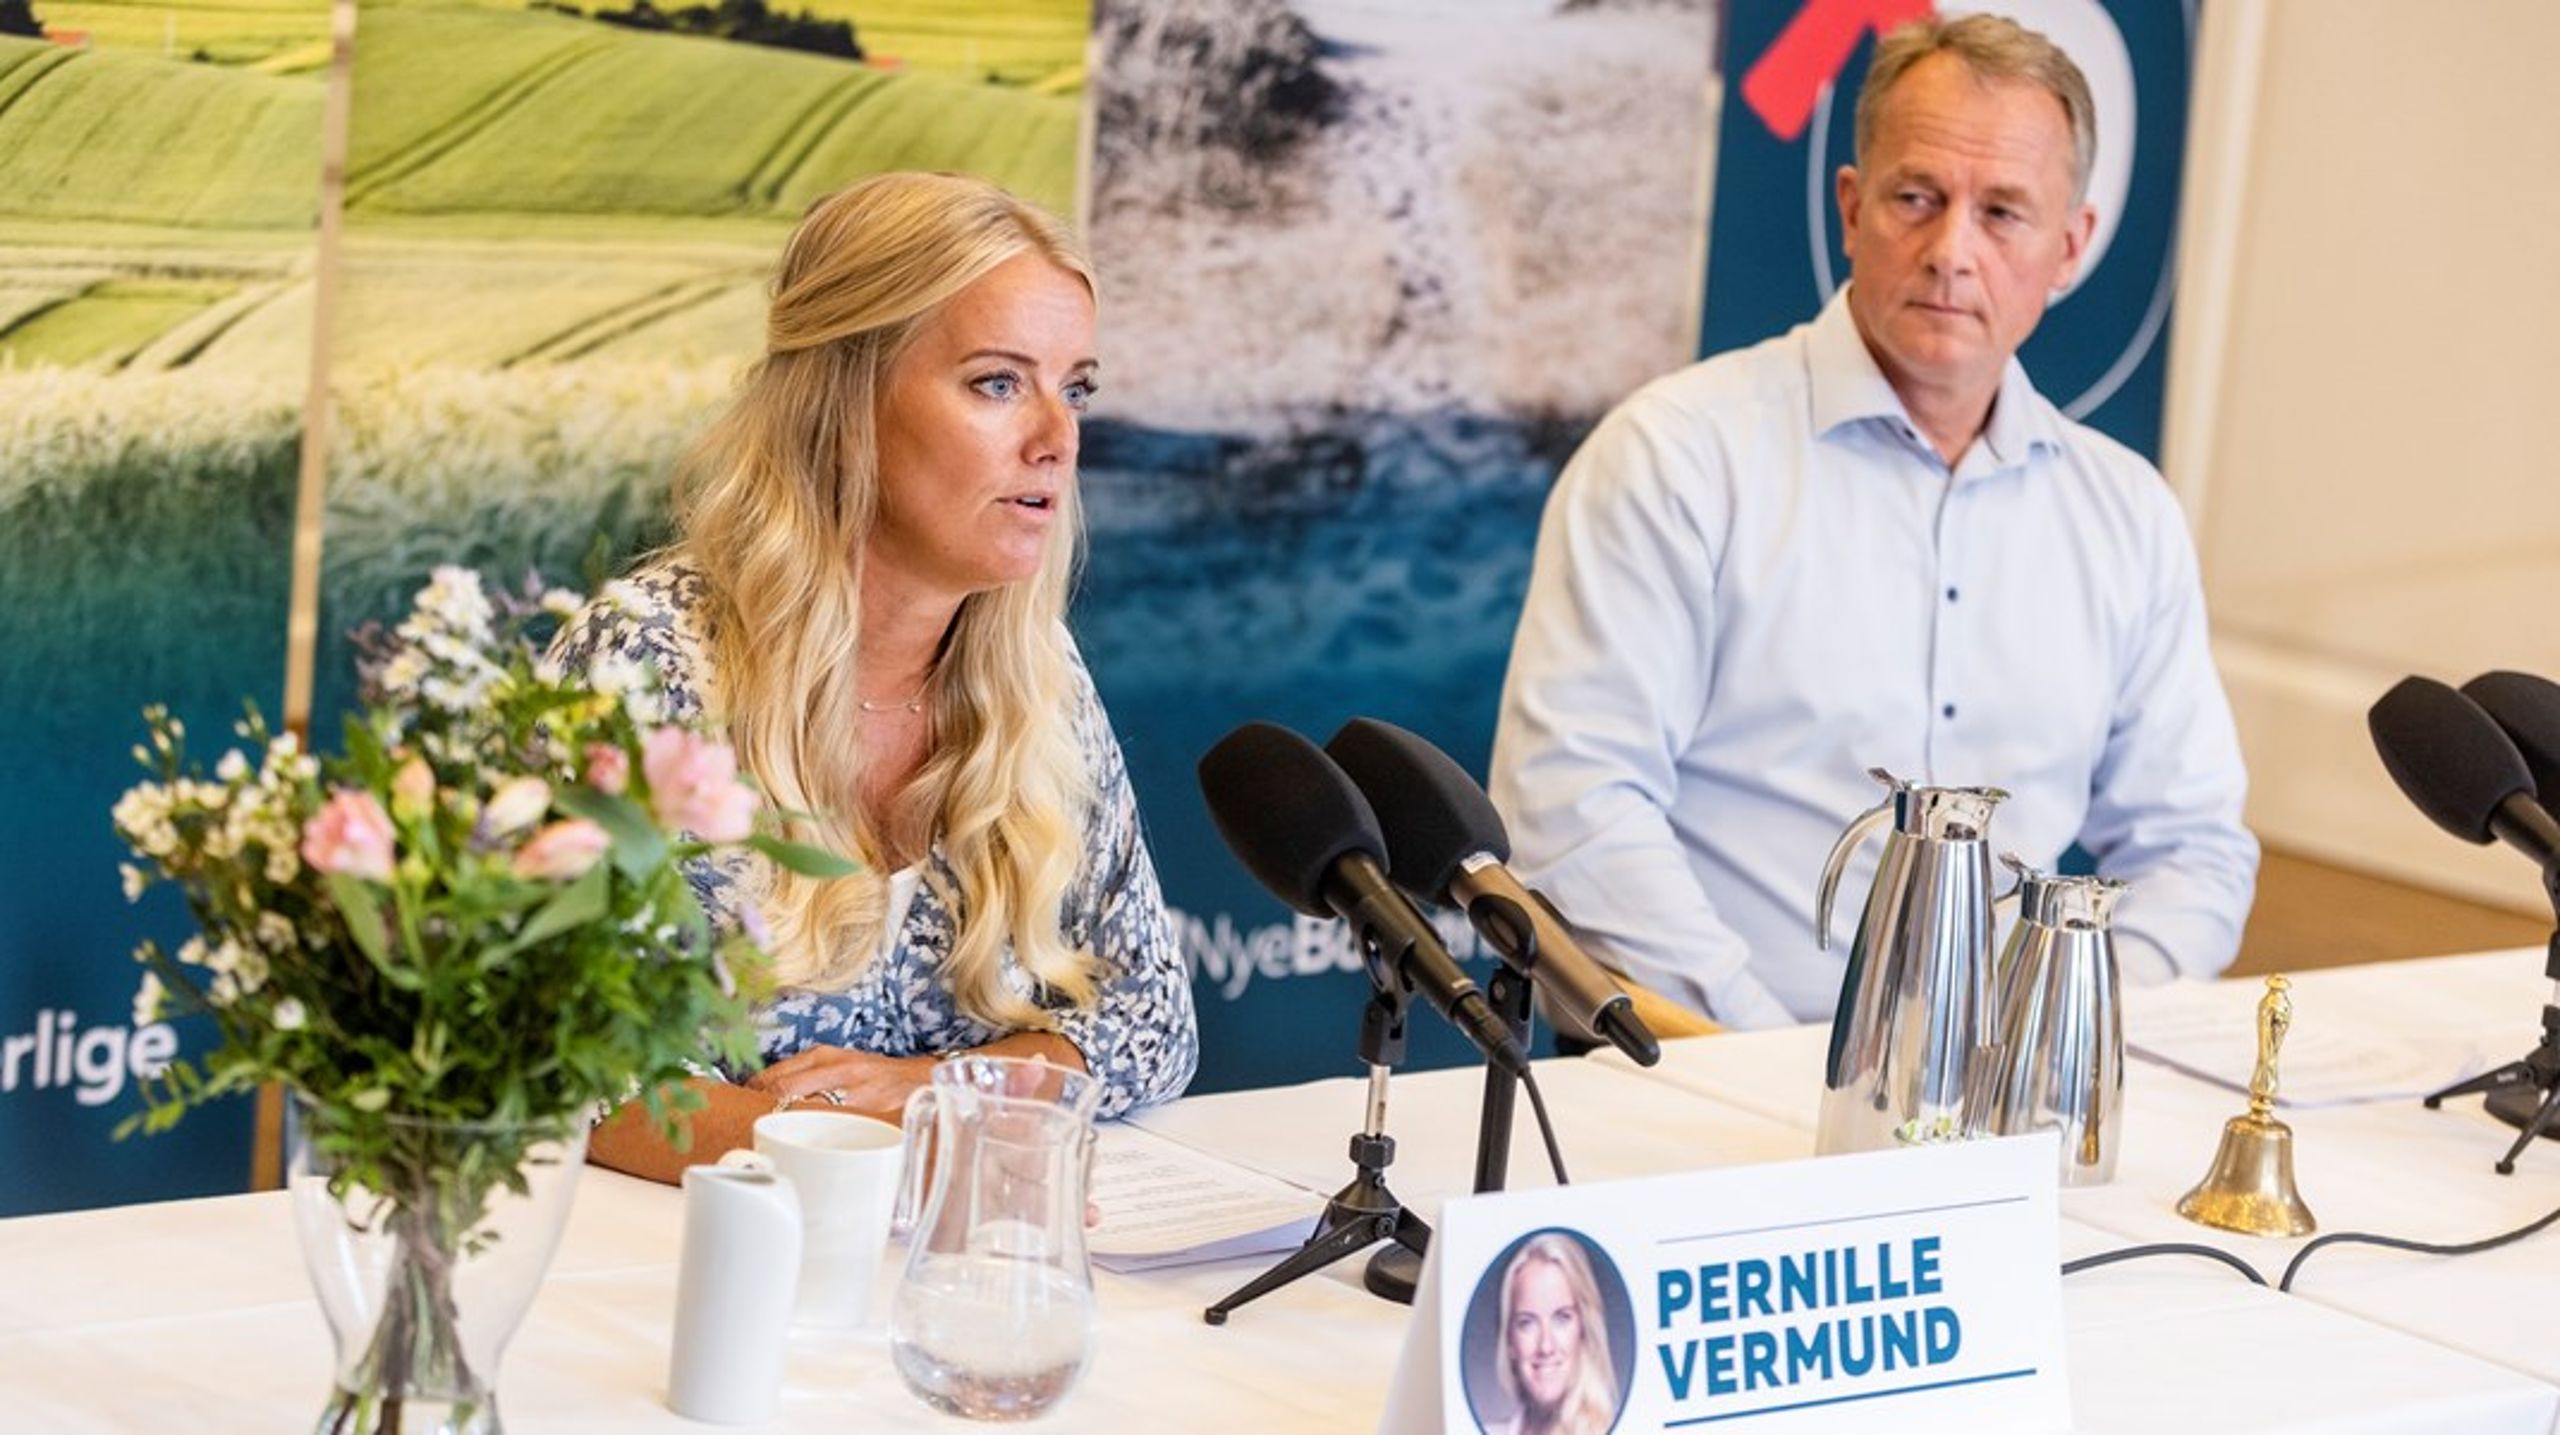 Formand Pernille Vermund og Nye Borgerliges andet medlem Kim Edberg Andersen afholdte pressemøde den 17. august efter partiets sommergruppemøde på Christiansborg Slot.